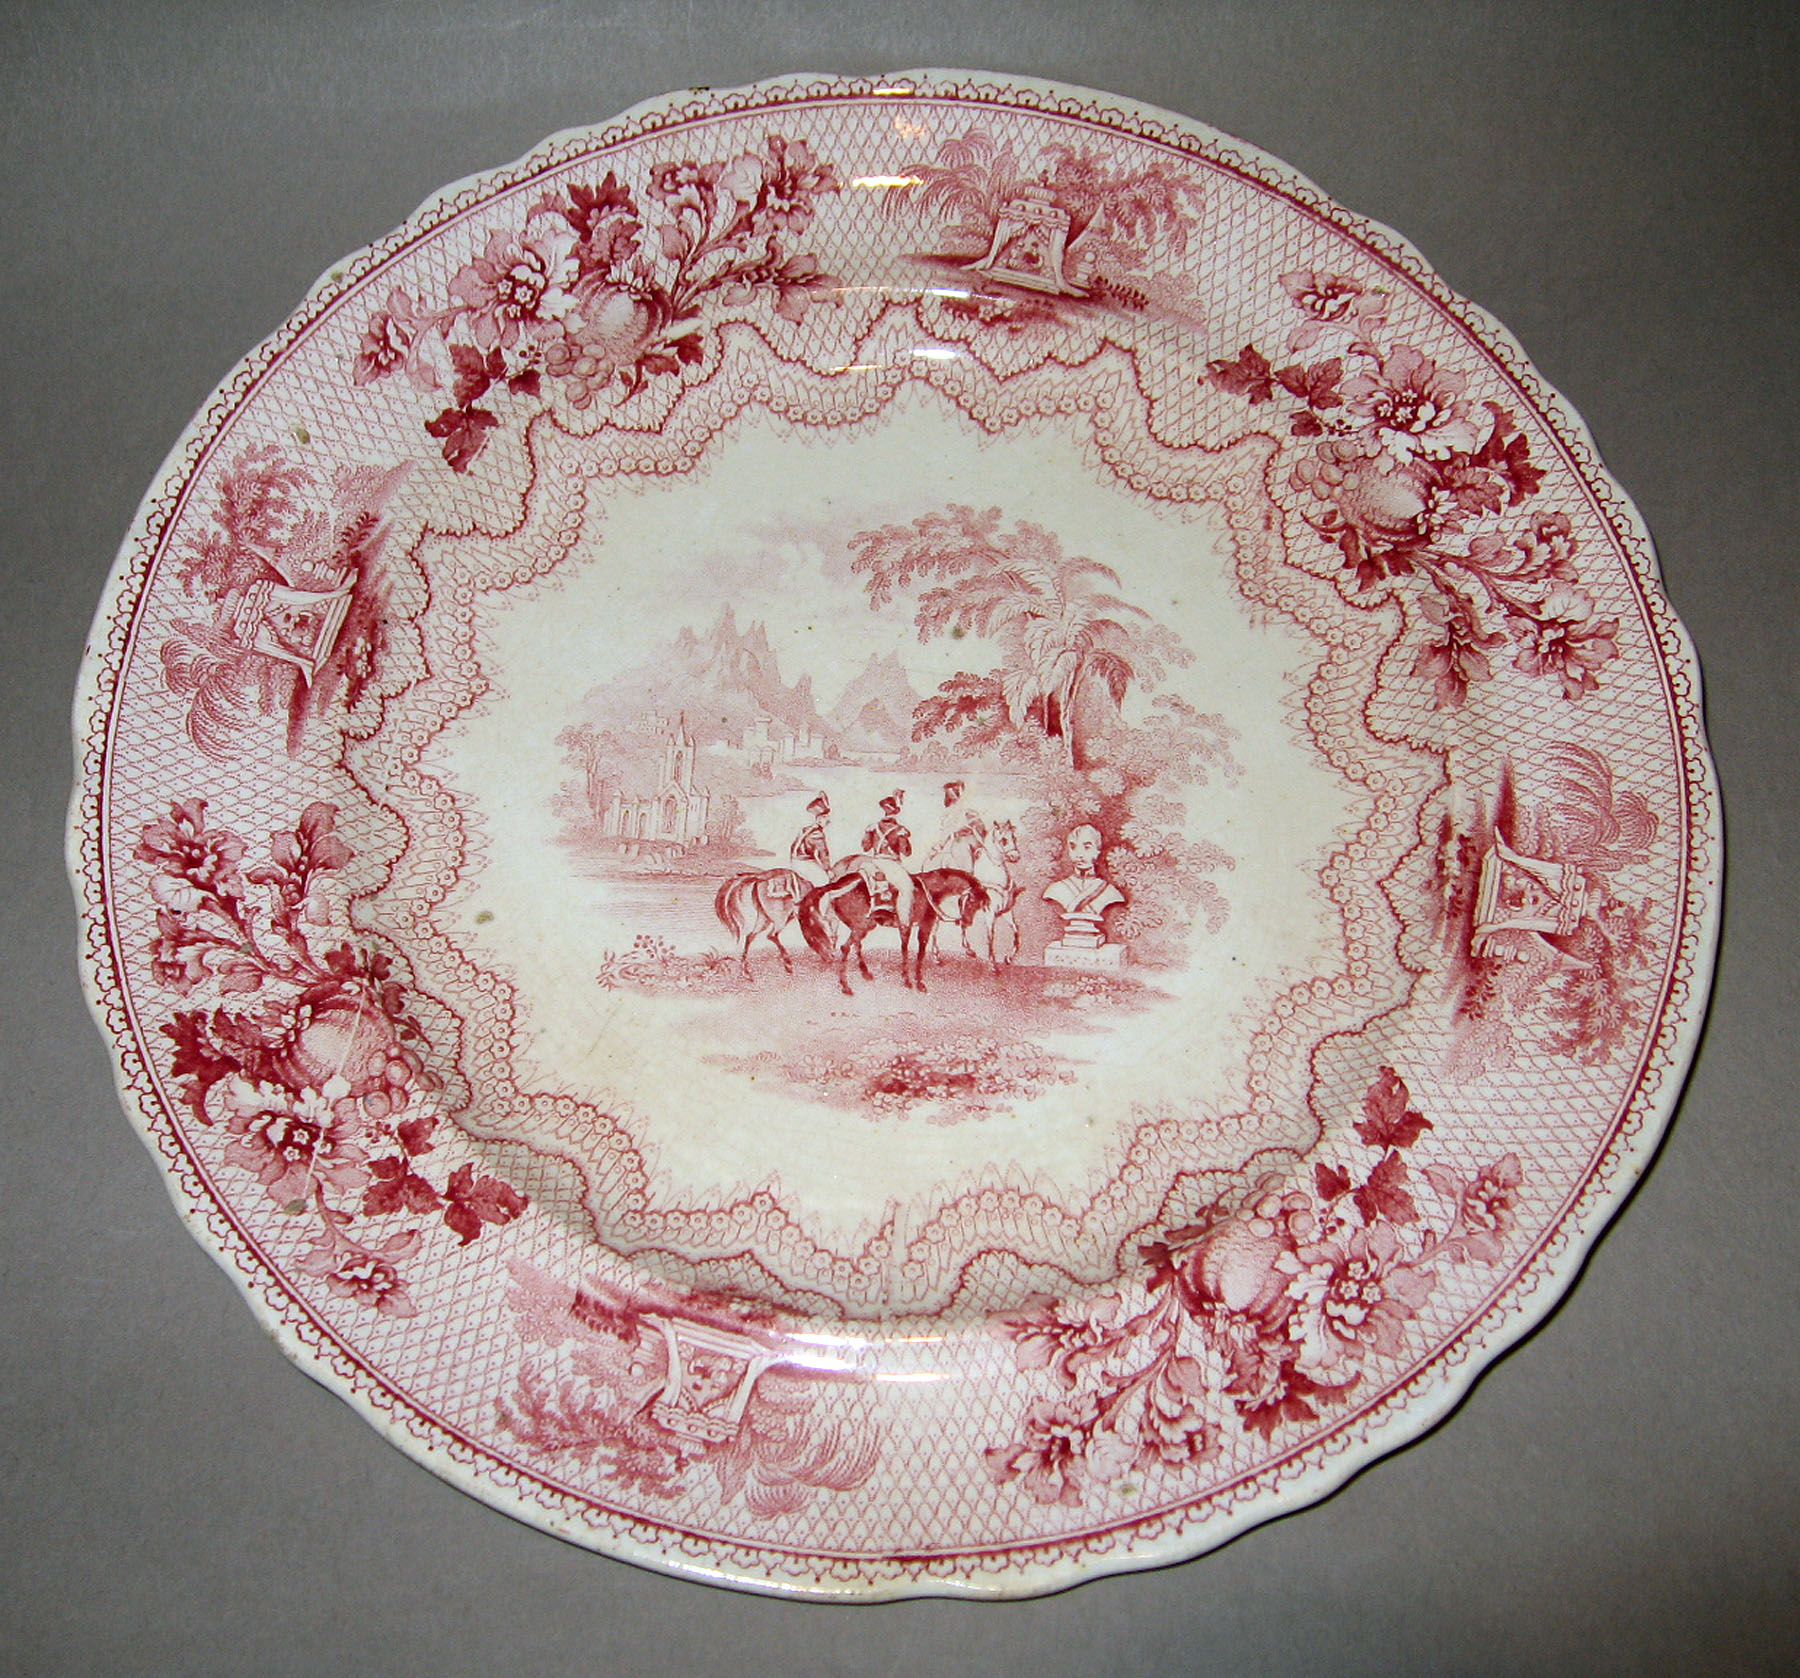 1961.0441.001 Heath earthenware plate